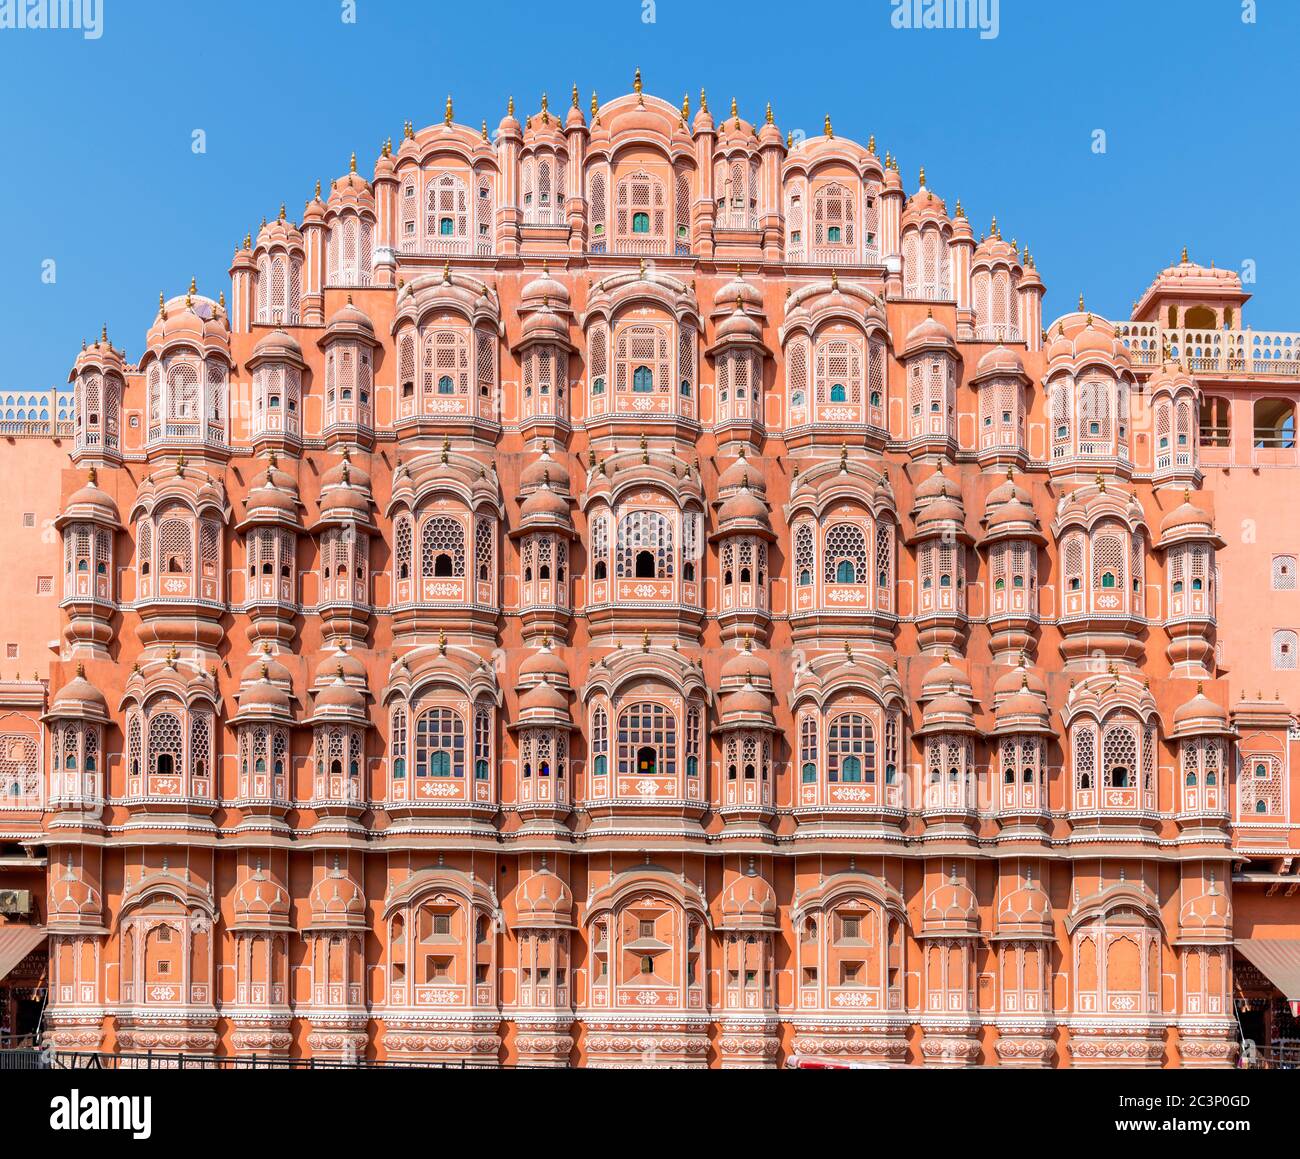 Fassade des Hawa Mahal (Palast der Winde oder Palast der Brise), die Altstadt, Jaipur, Rajasthan, Indien Stockfoto